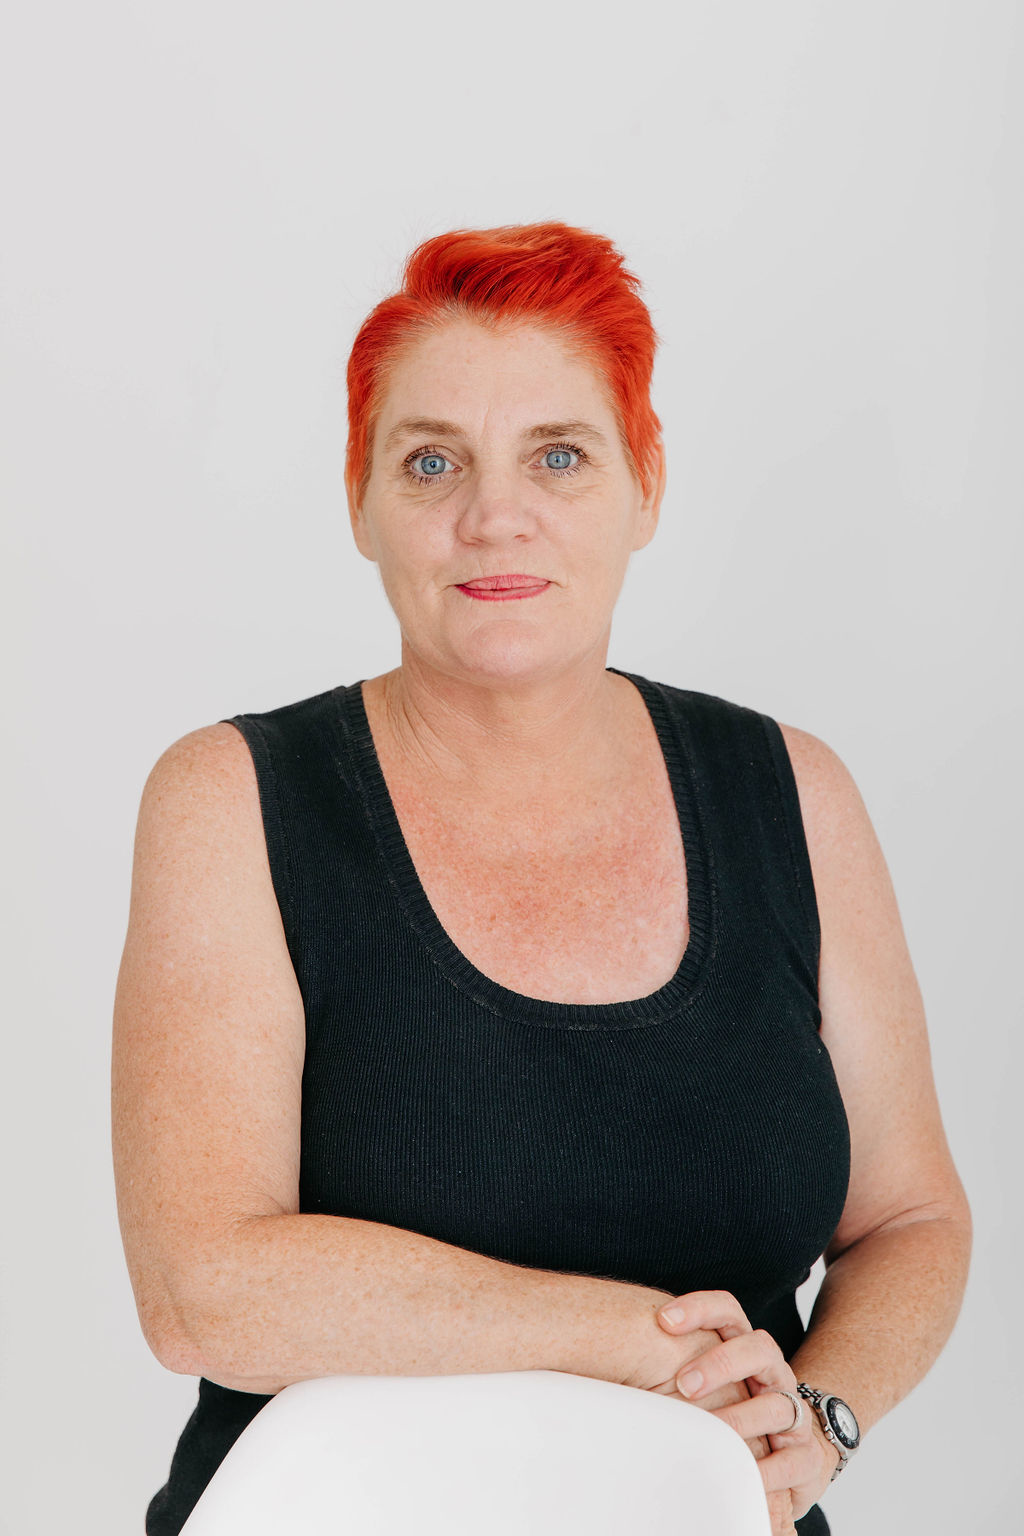 Danielle Dittmann - conveyancing paralegal - Gold Coast